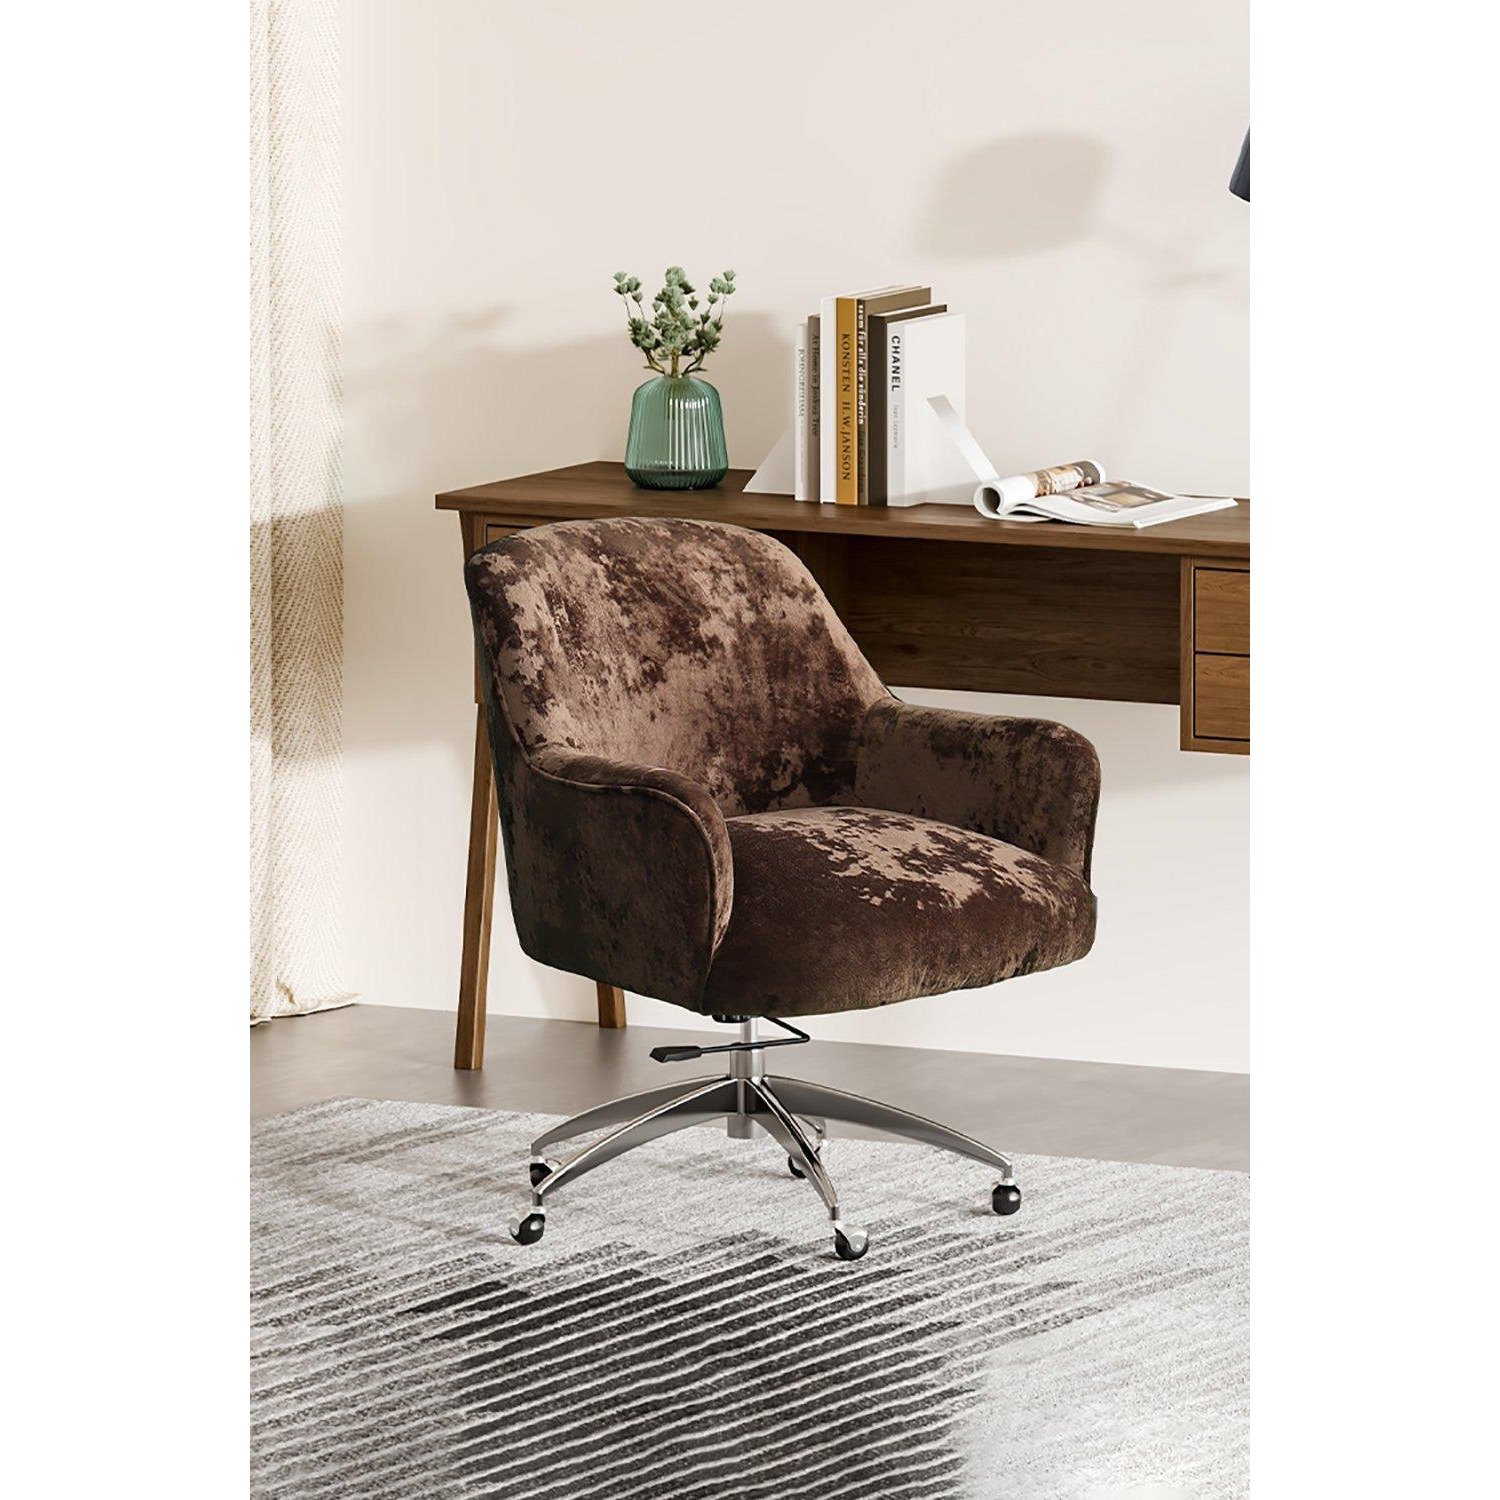 Velvet Upholstered Wheeled Swivel Office Chair - image 1